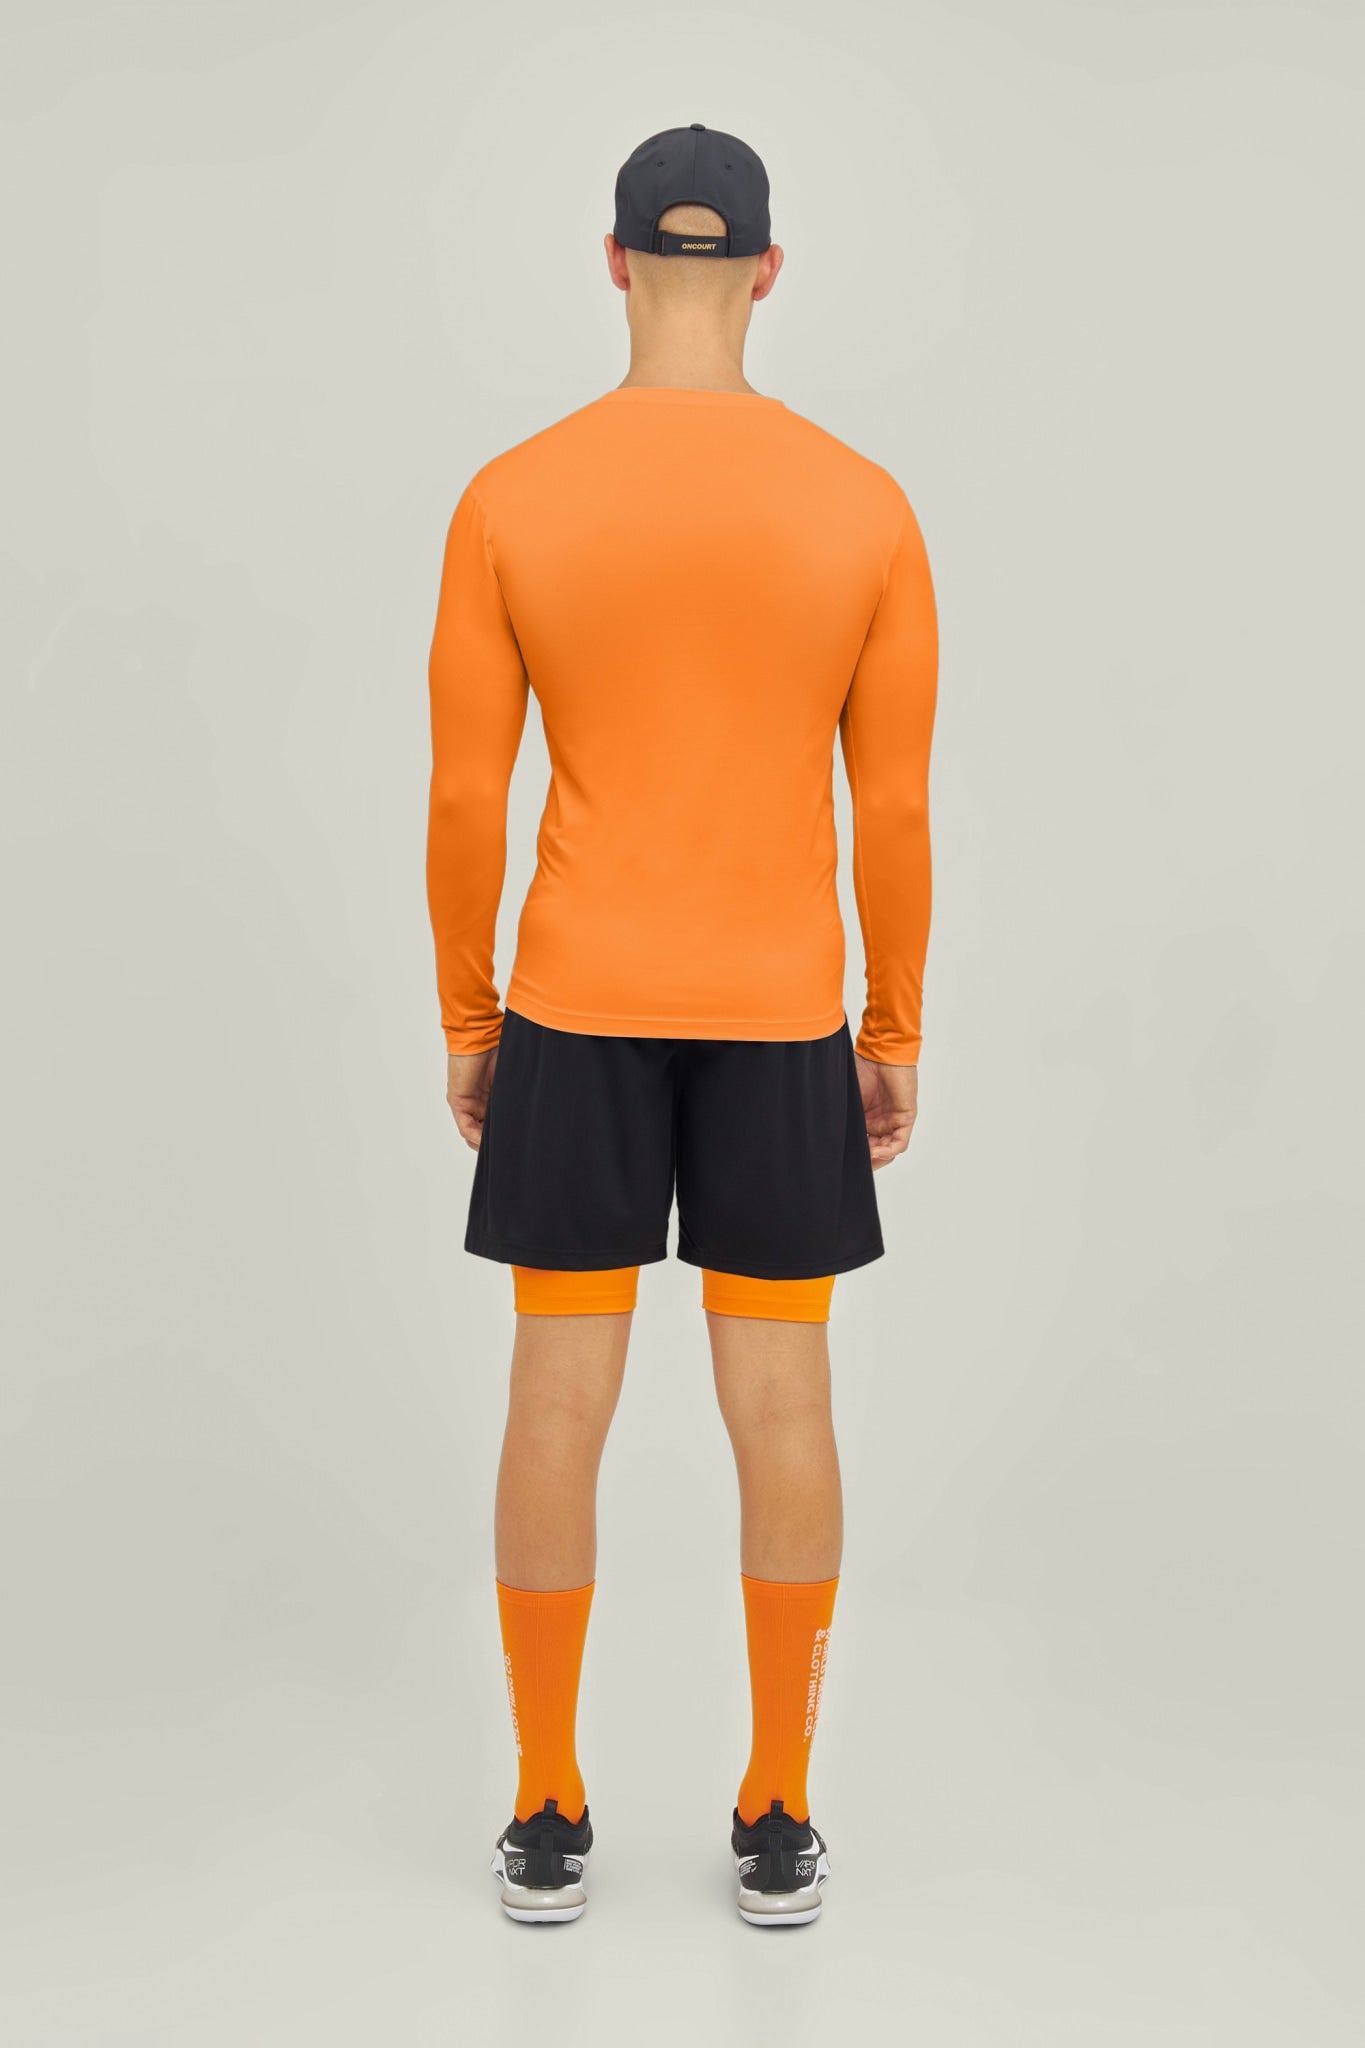 Oncourt LS Layer T-Shirt - Orange